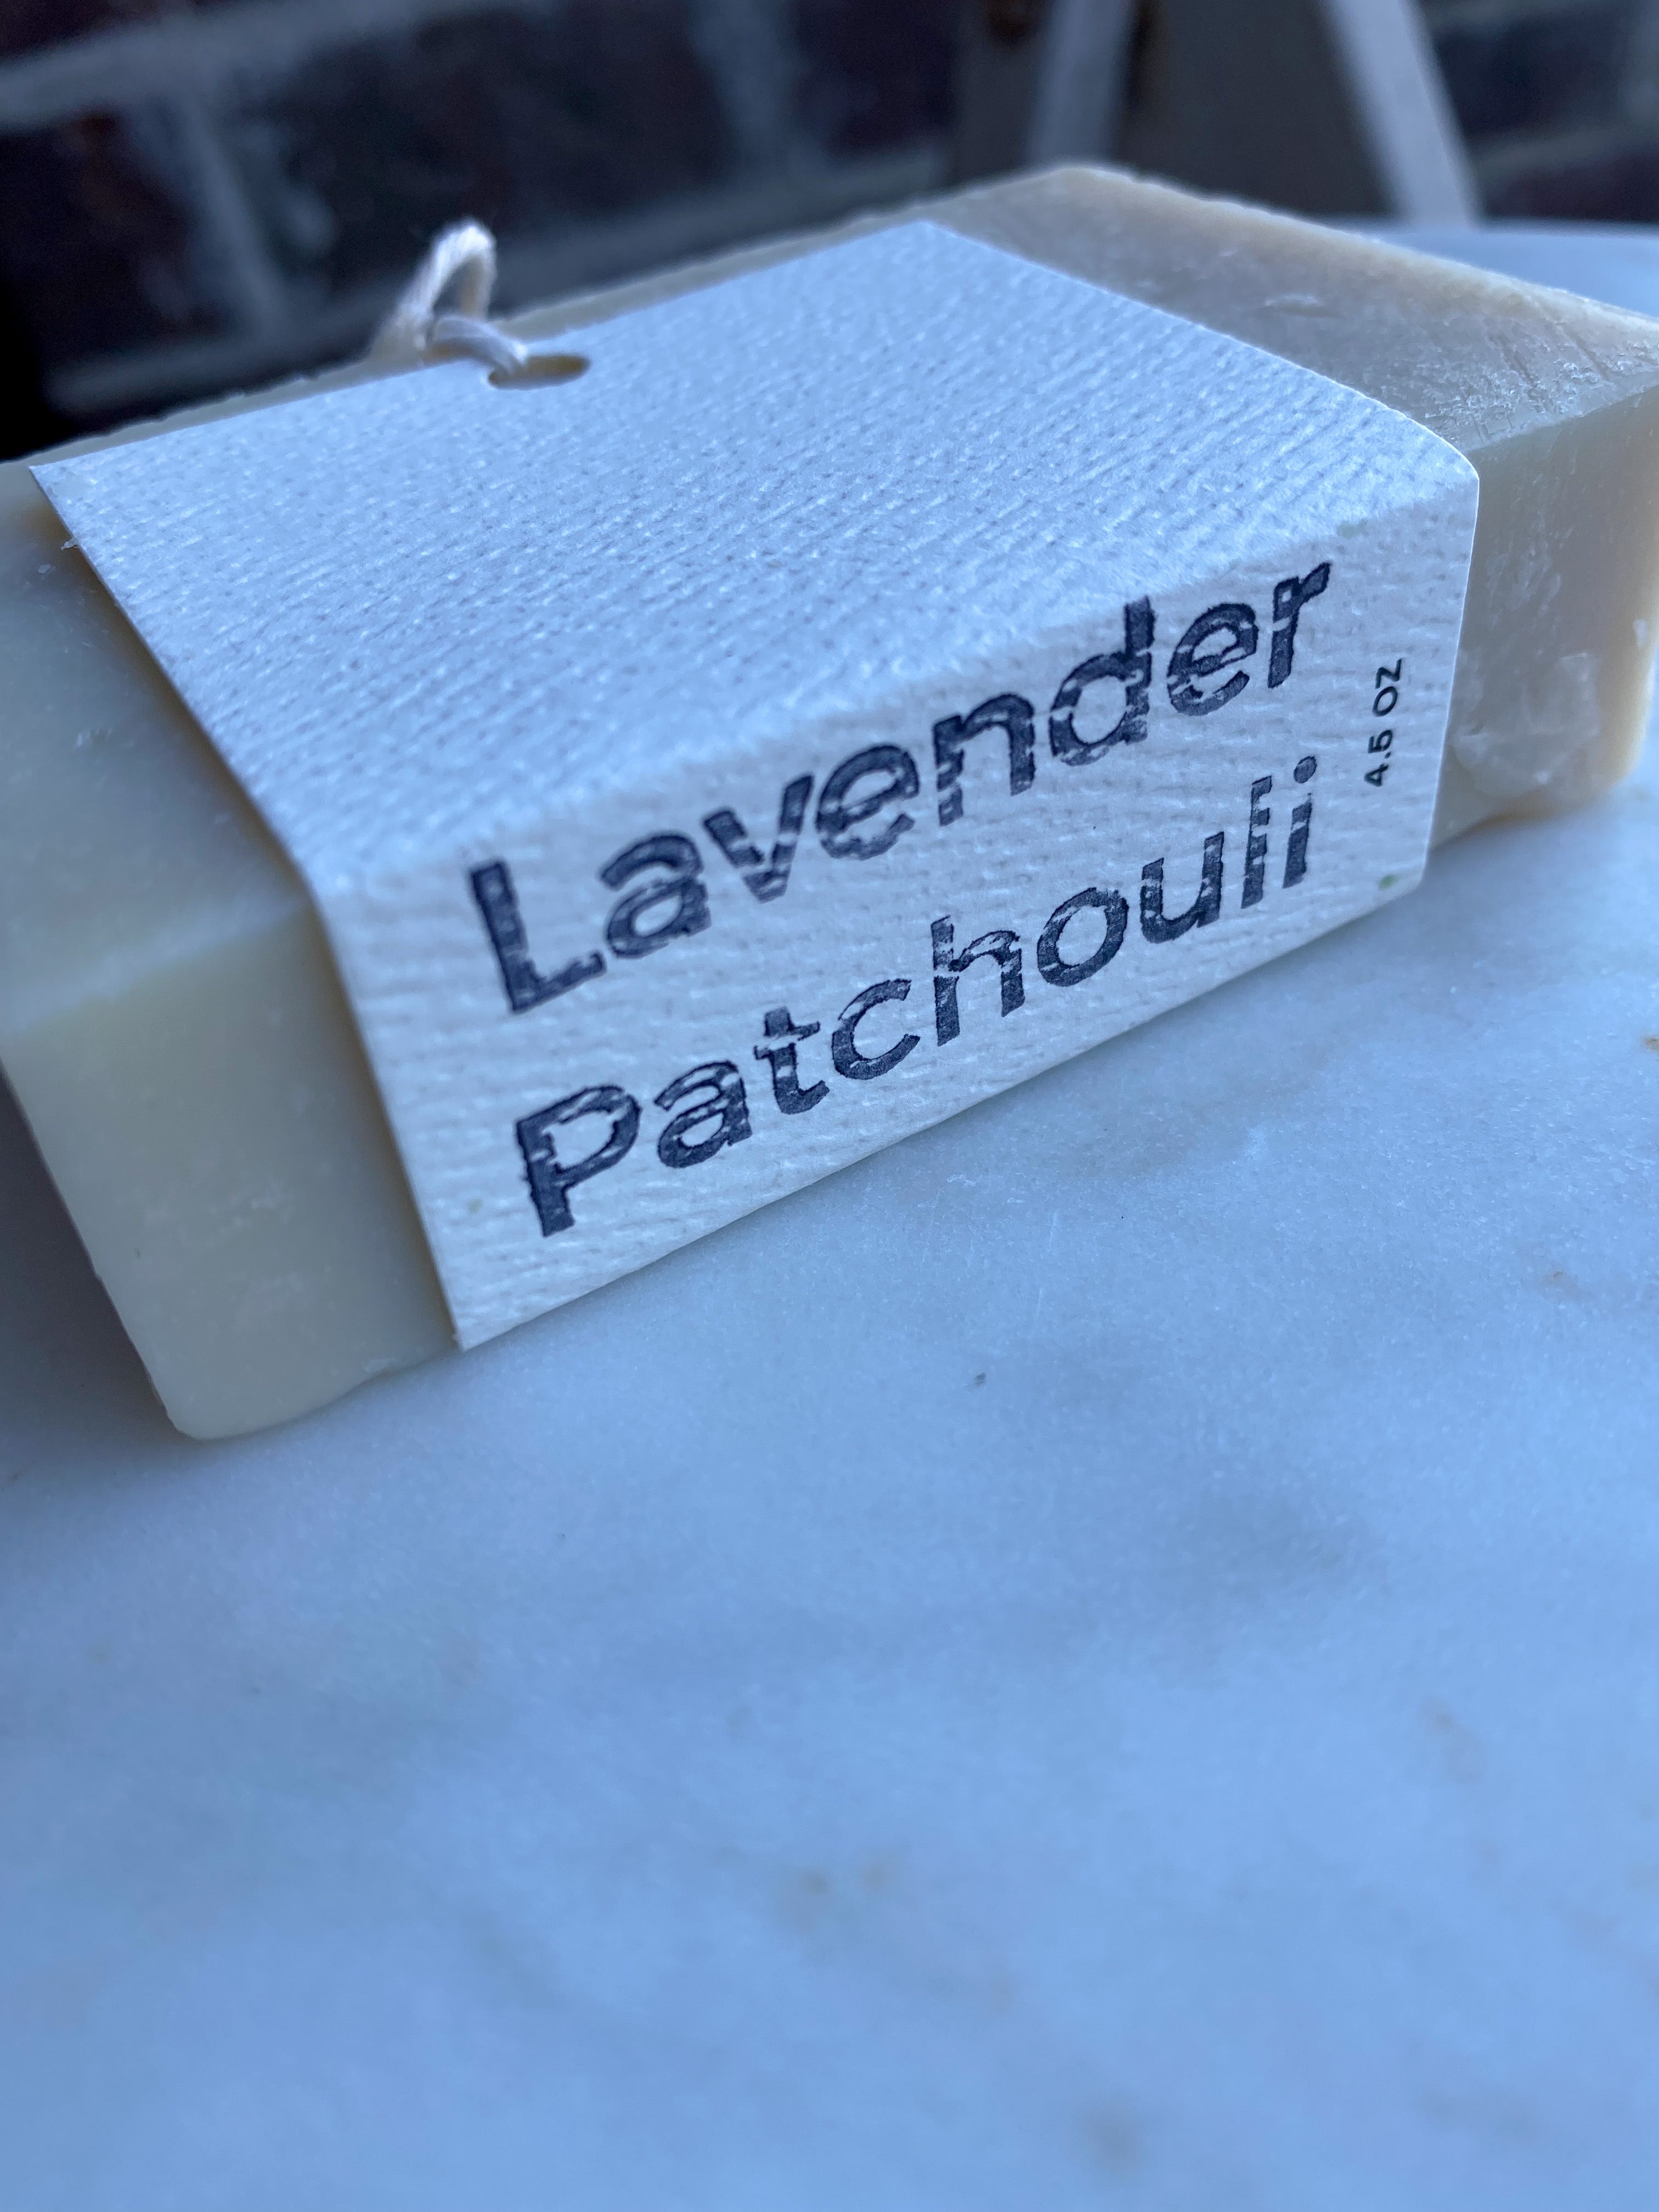 Lavender Patchouli Cold Process Soap